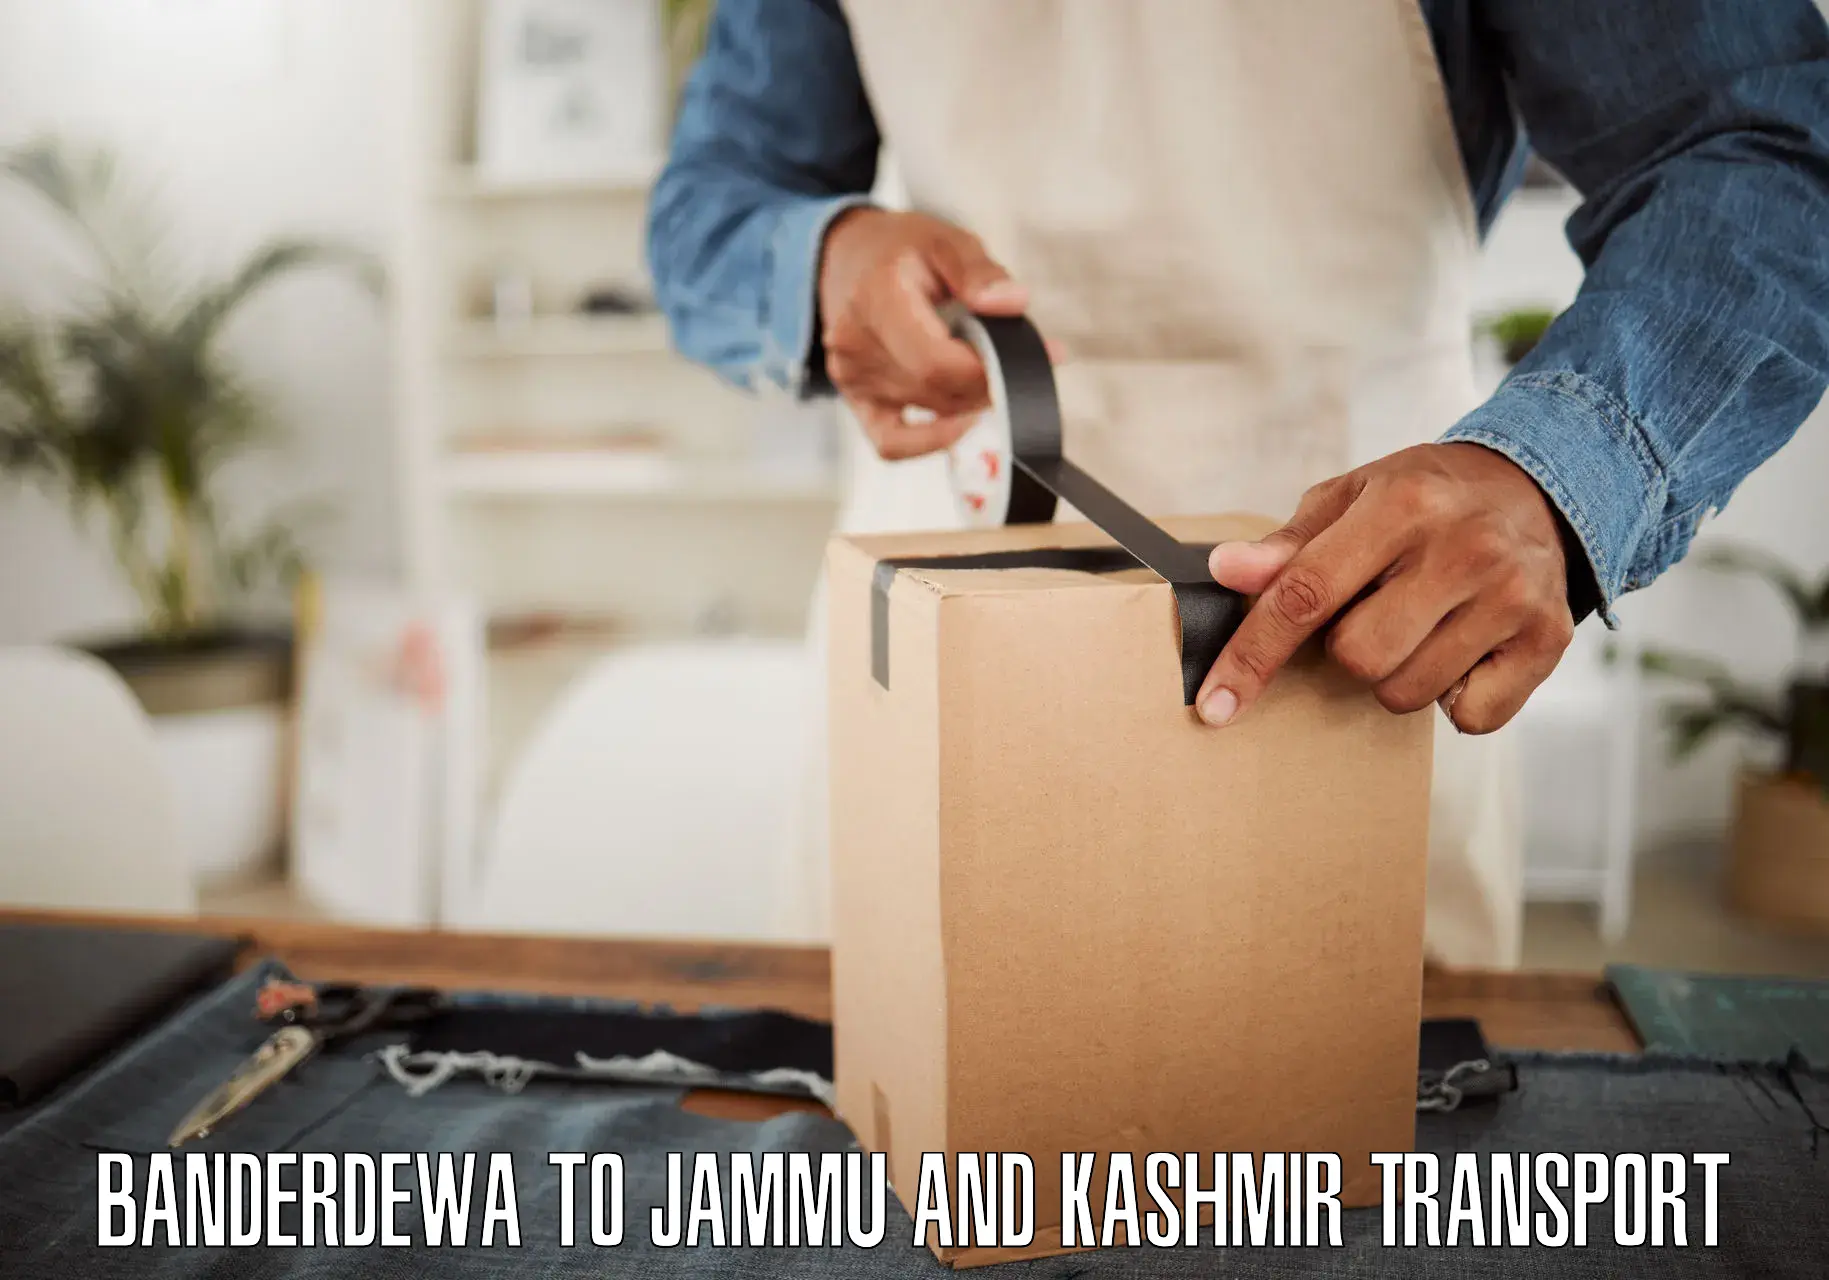 Two wheeler parcel service in Banderdewa to Bhaderwah